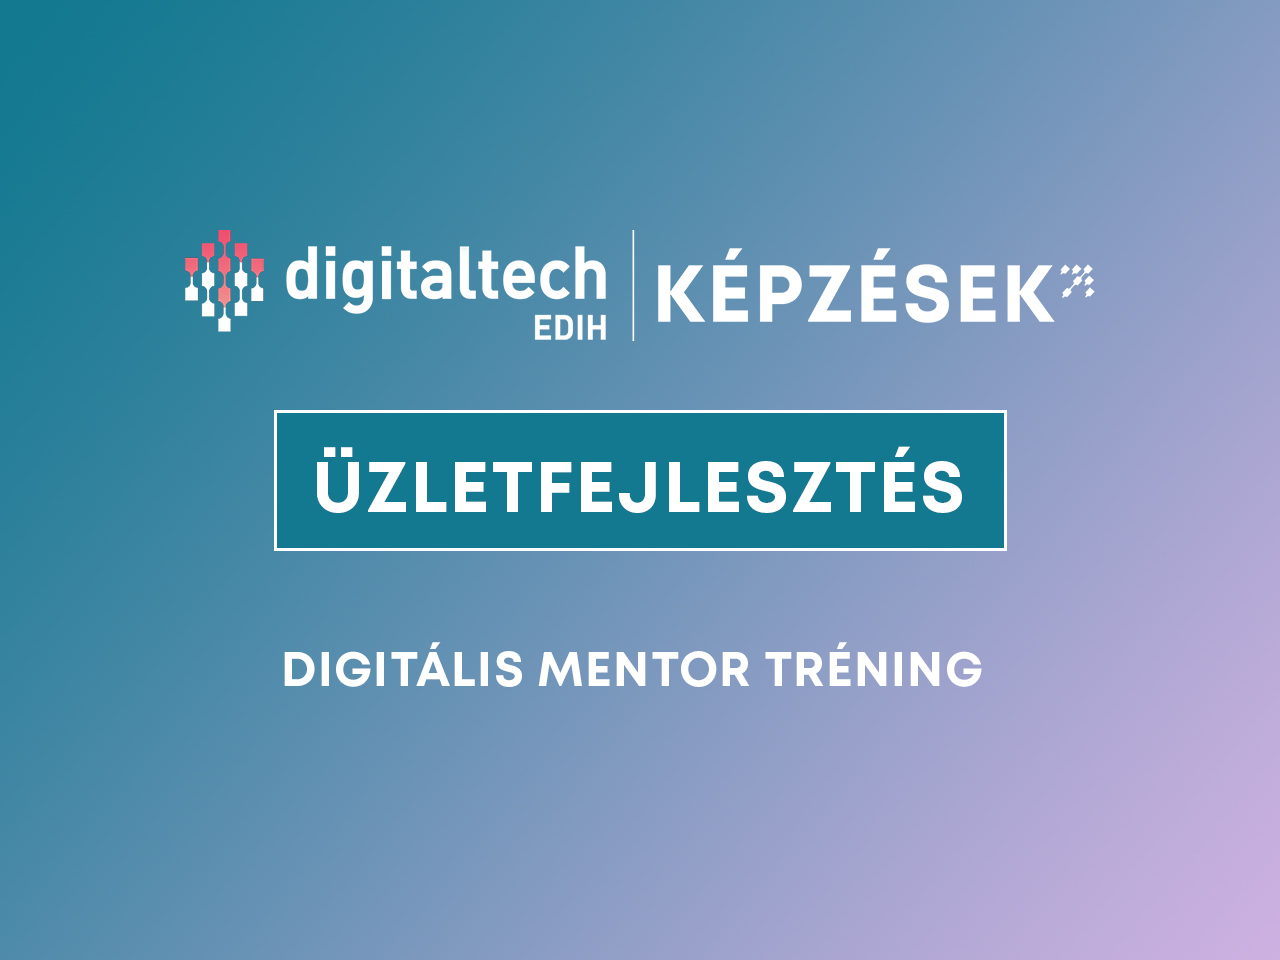 digitális mentor tréning üzletfejlesztés képzés digitaltech edih